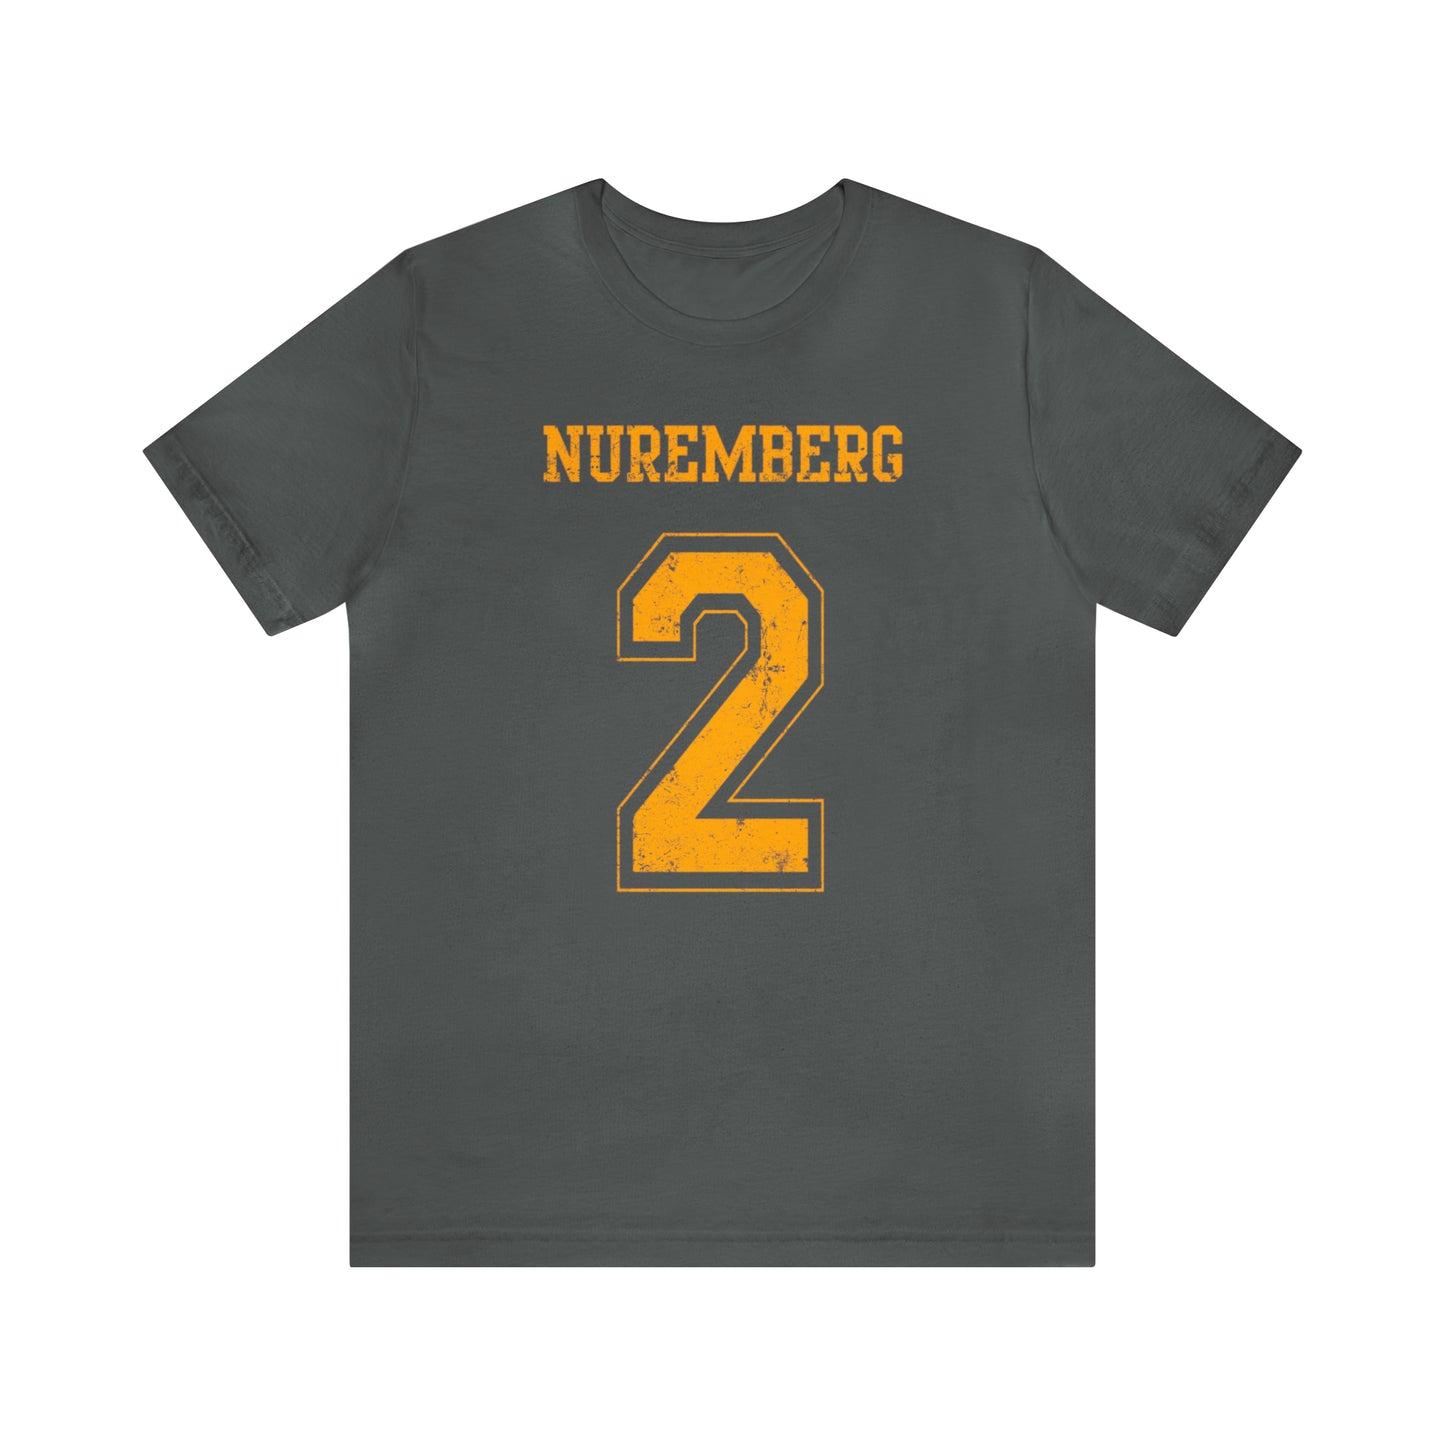 Nuremberg 2 Jersey-Style Unisex Jersey Short Sleeve Tee